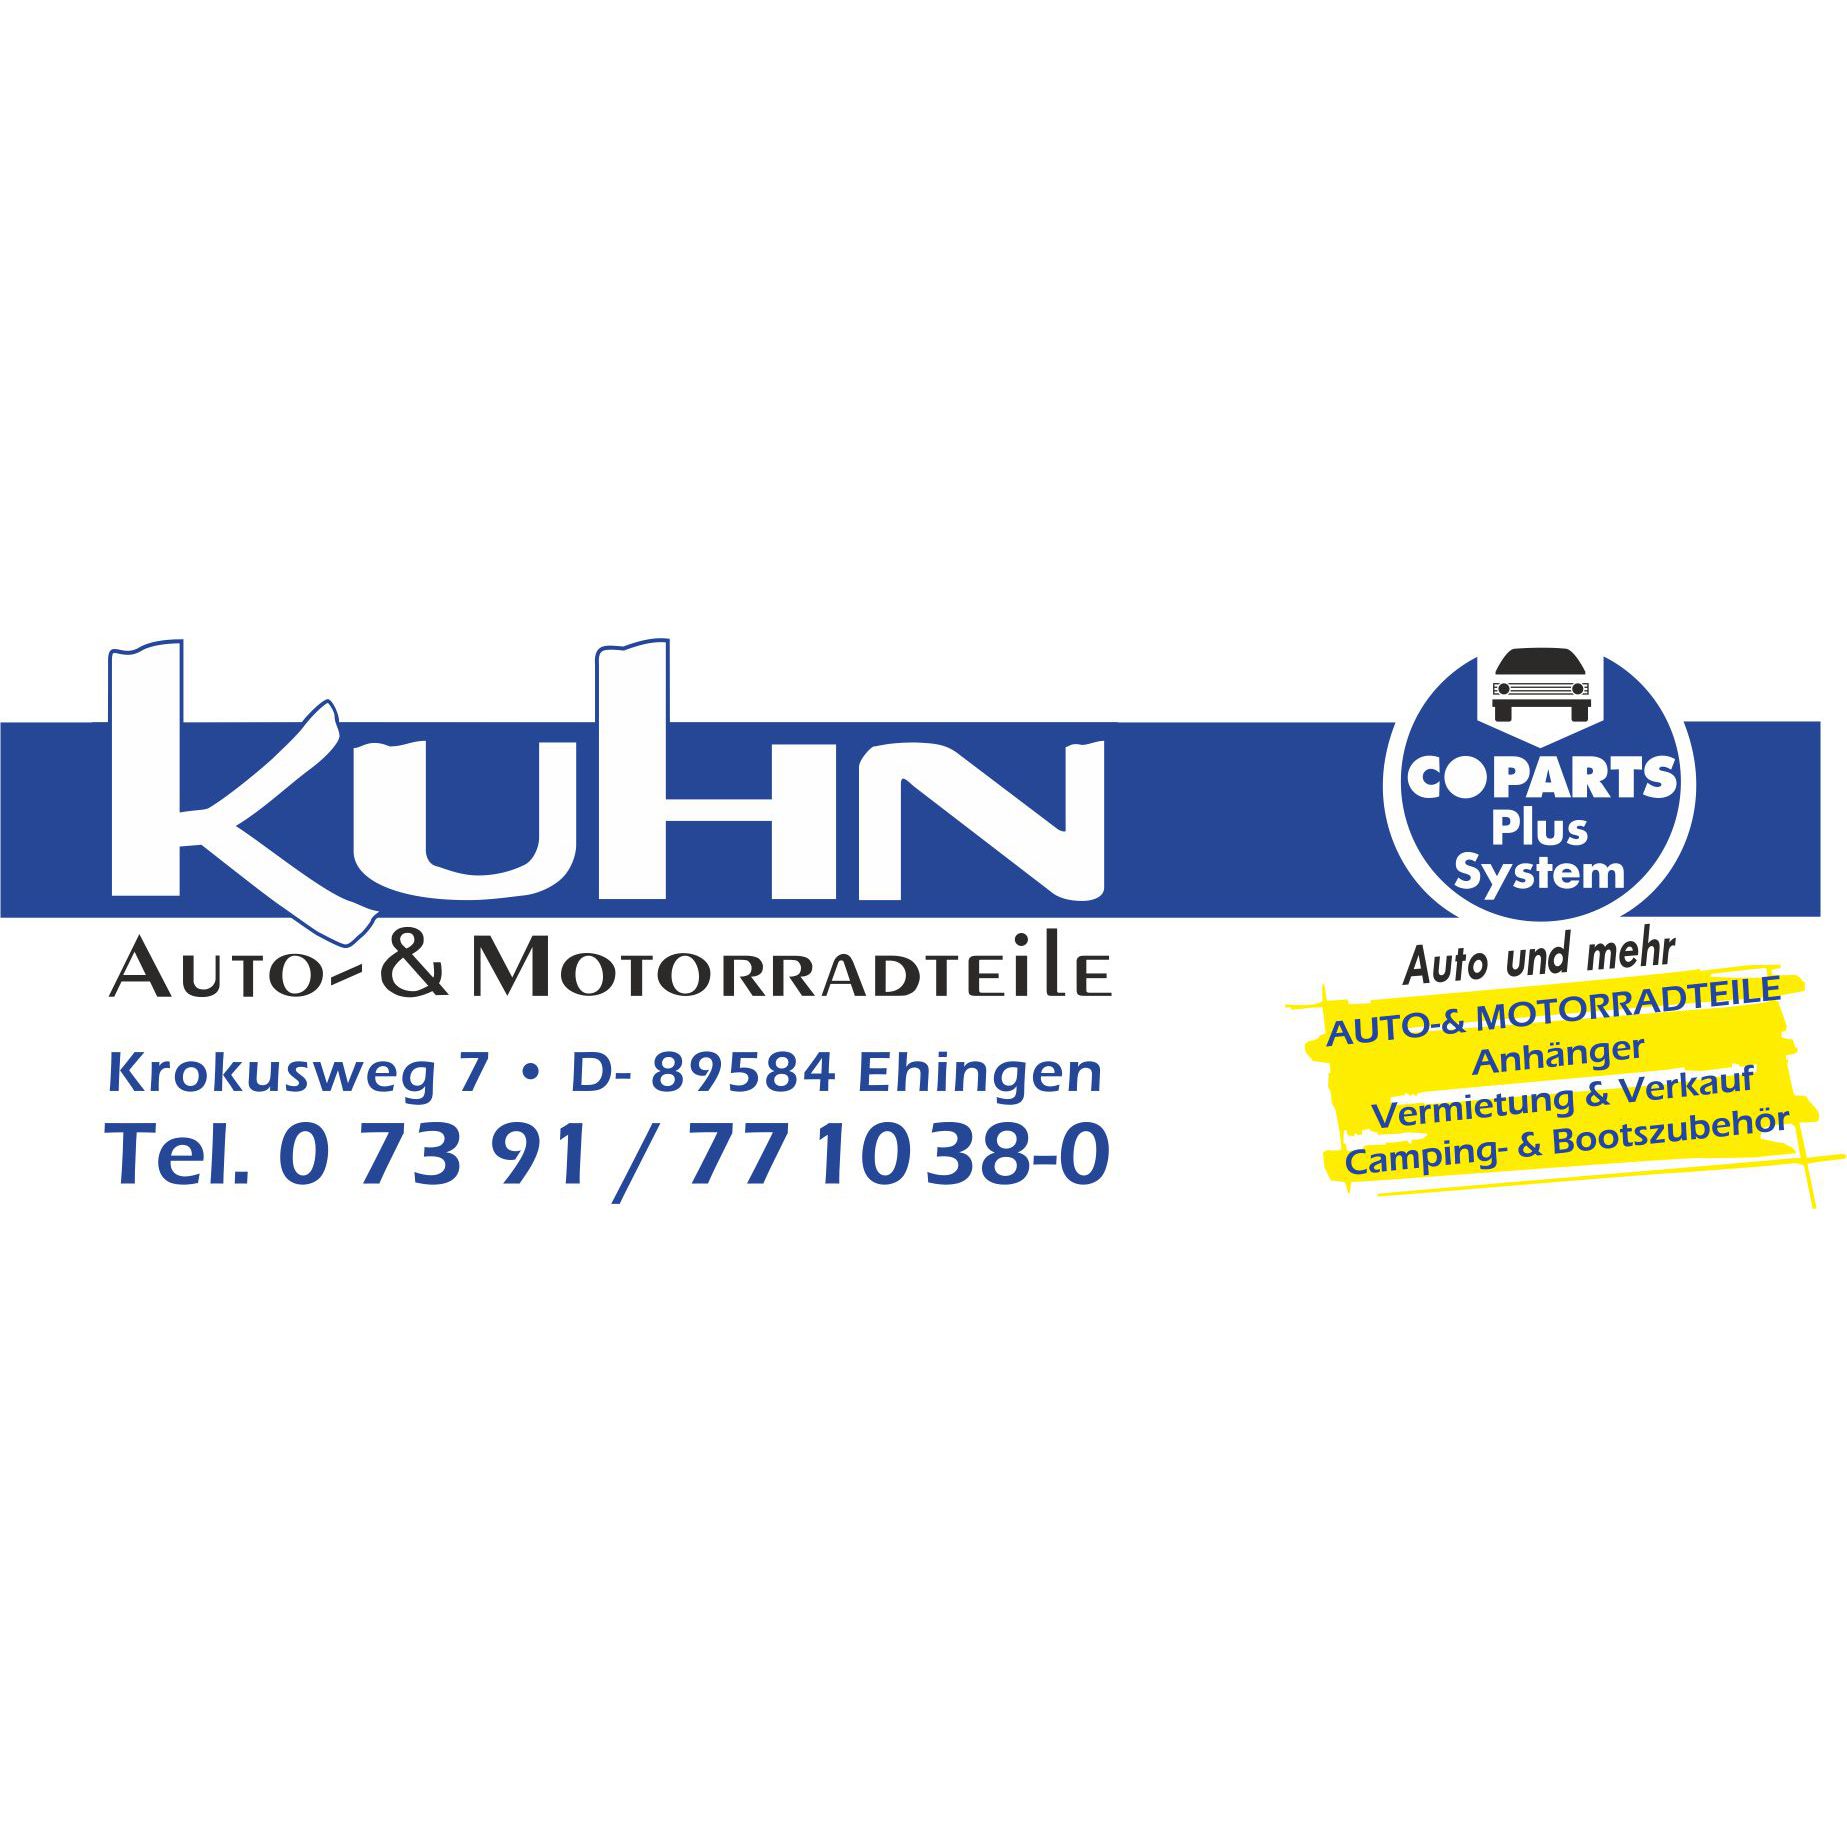 Logo von Auto- & Motorradteile Kuhn